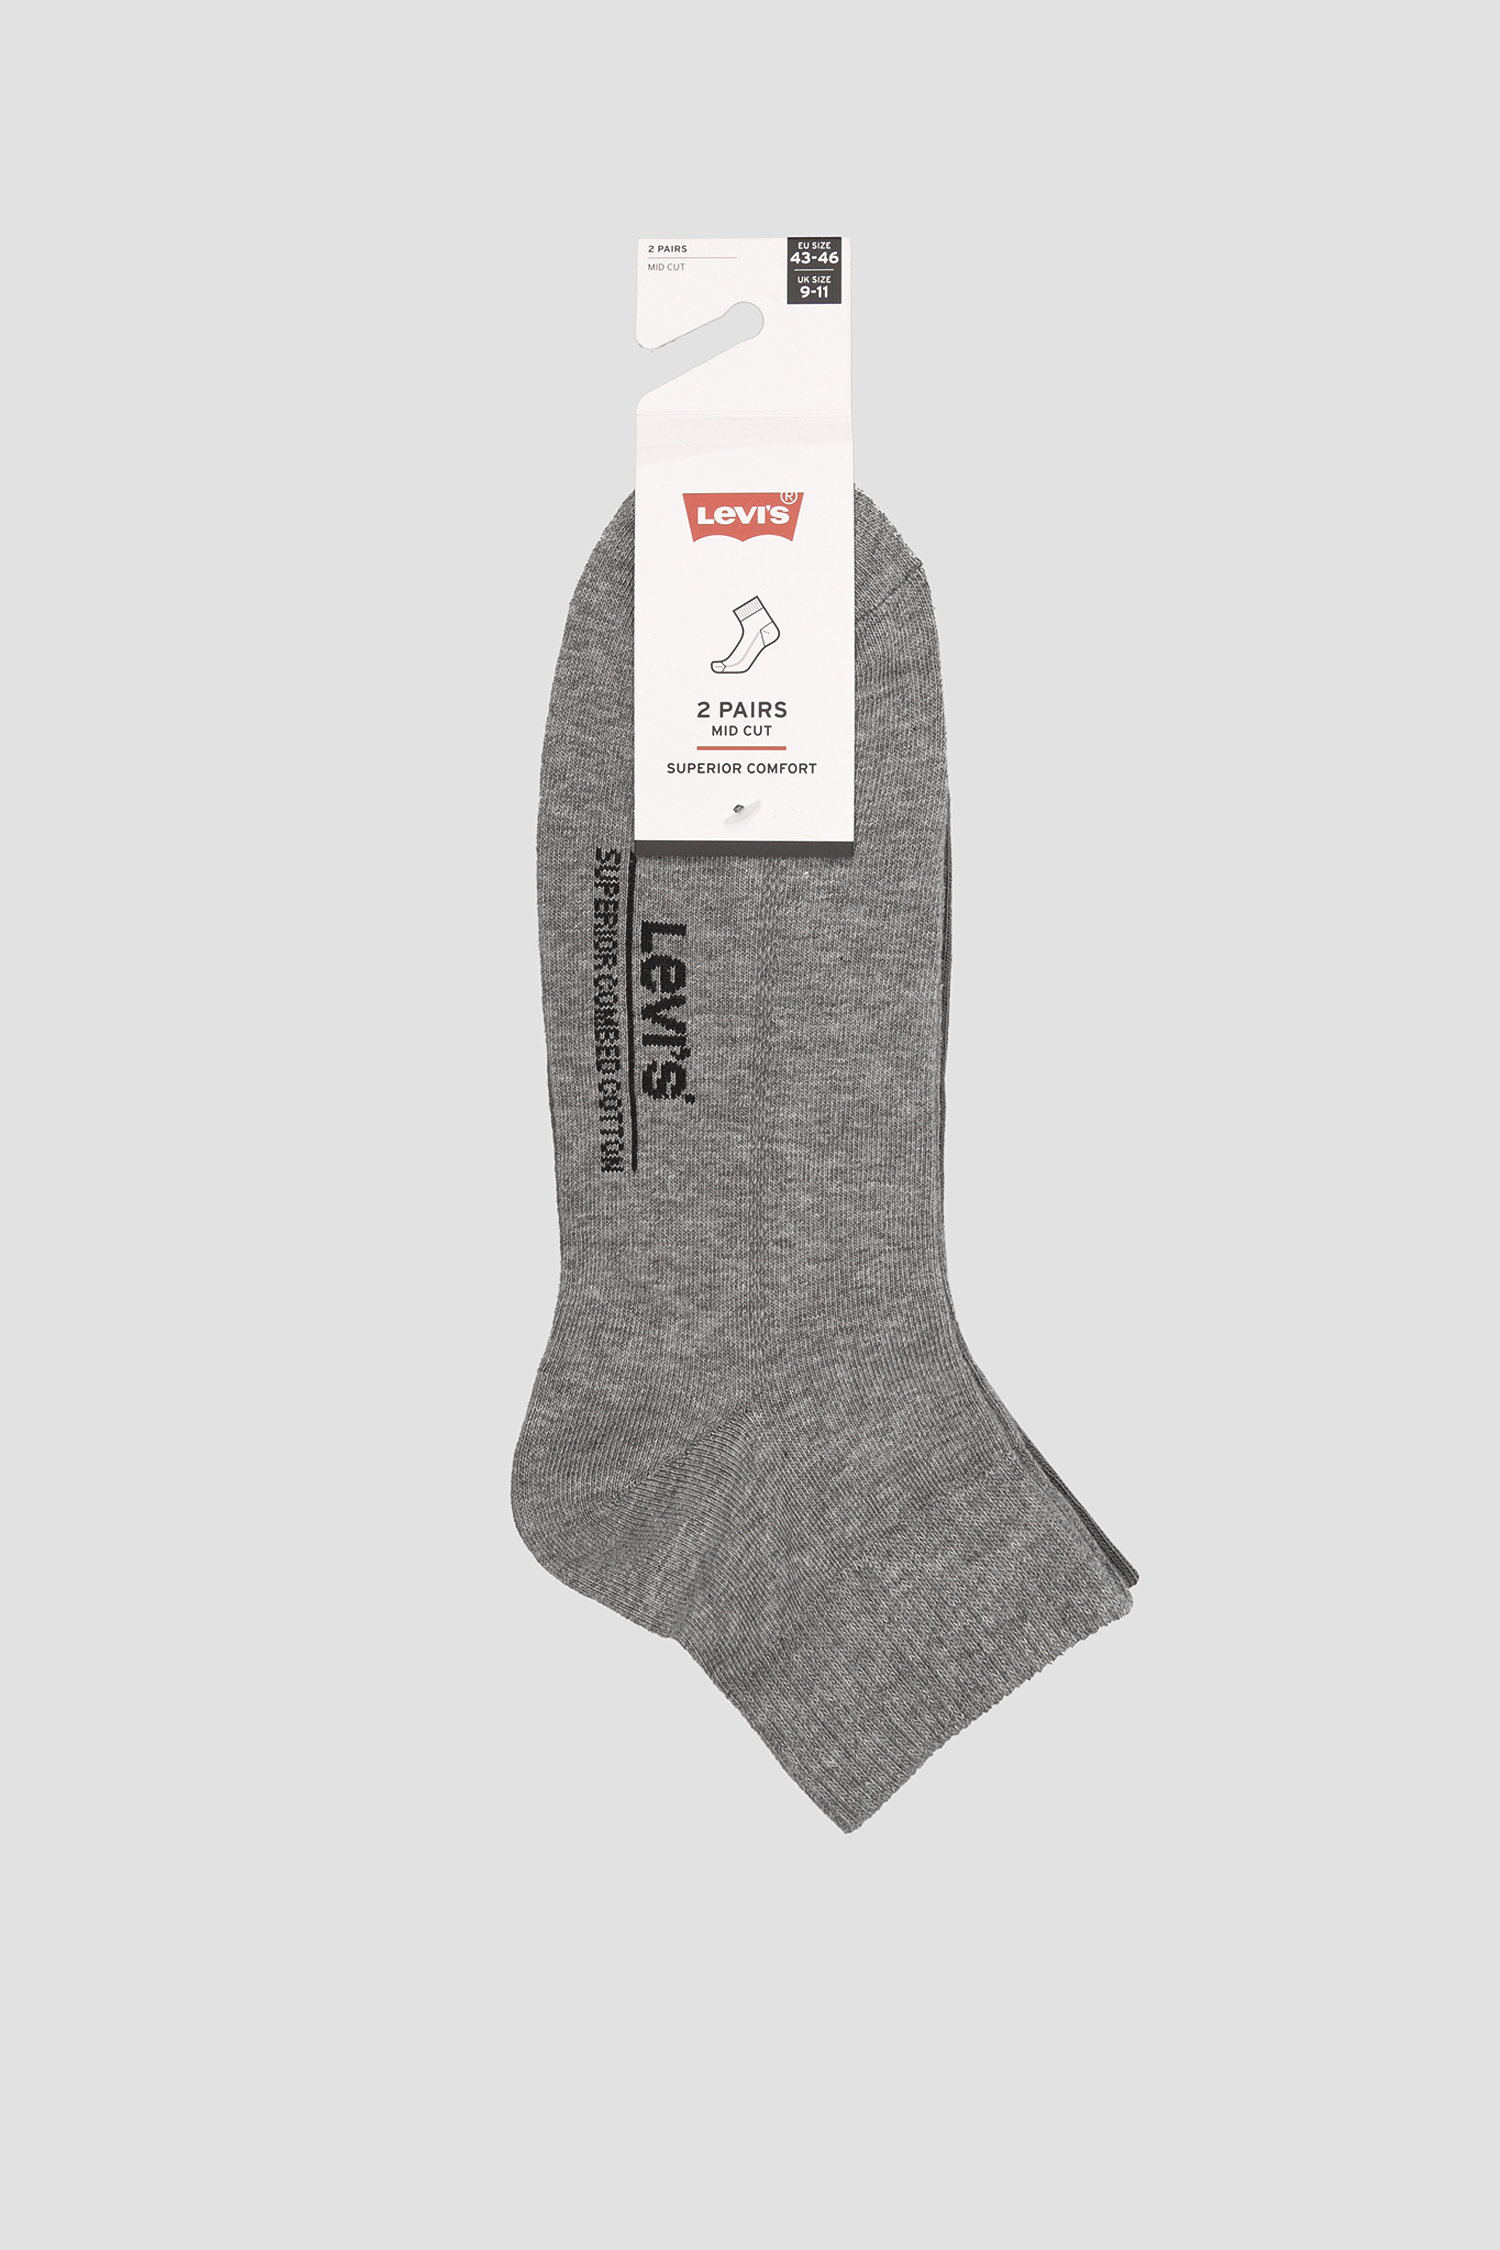 Сірі шкарпетки для підлітків (2 пари) Levi’s® 993052001;758